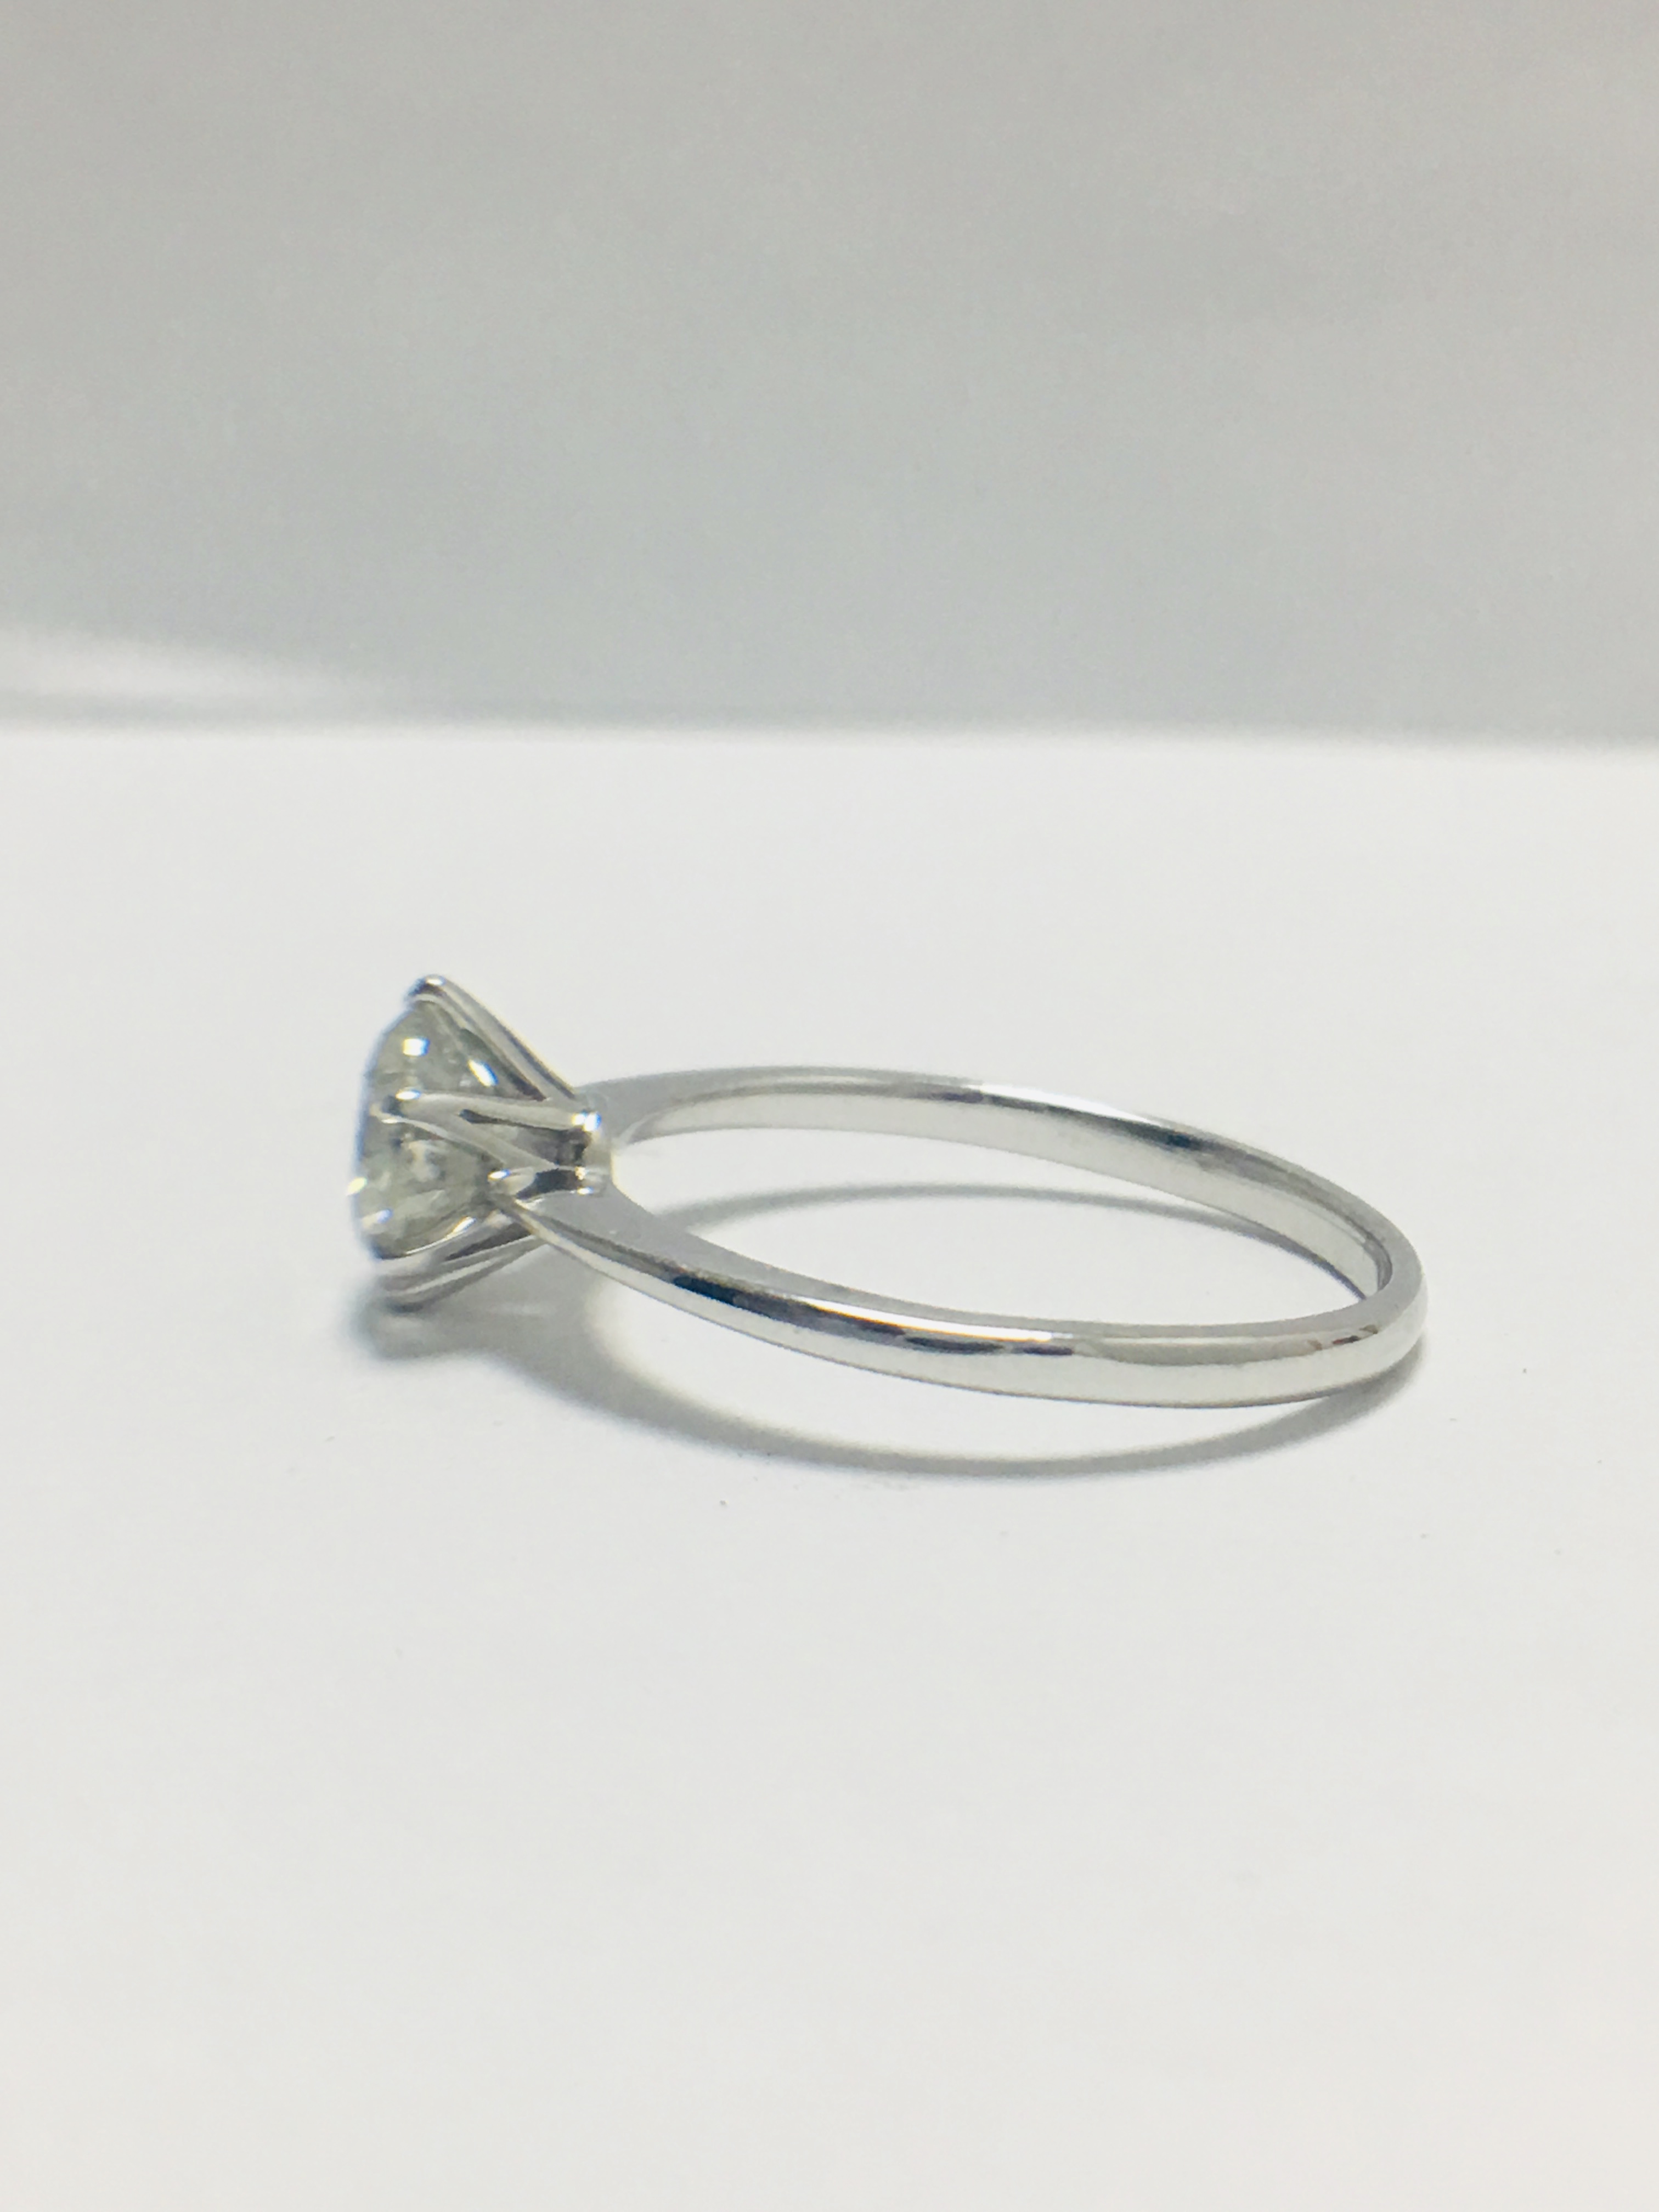 Platinum 1 carat diamond solitaire ring,WGI certification - Image 3 of 10